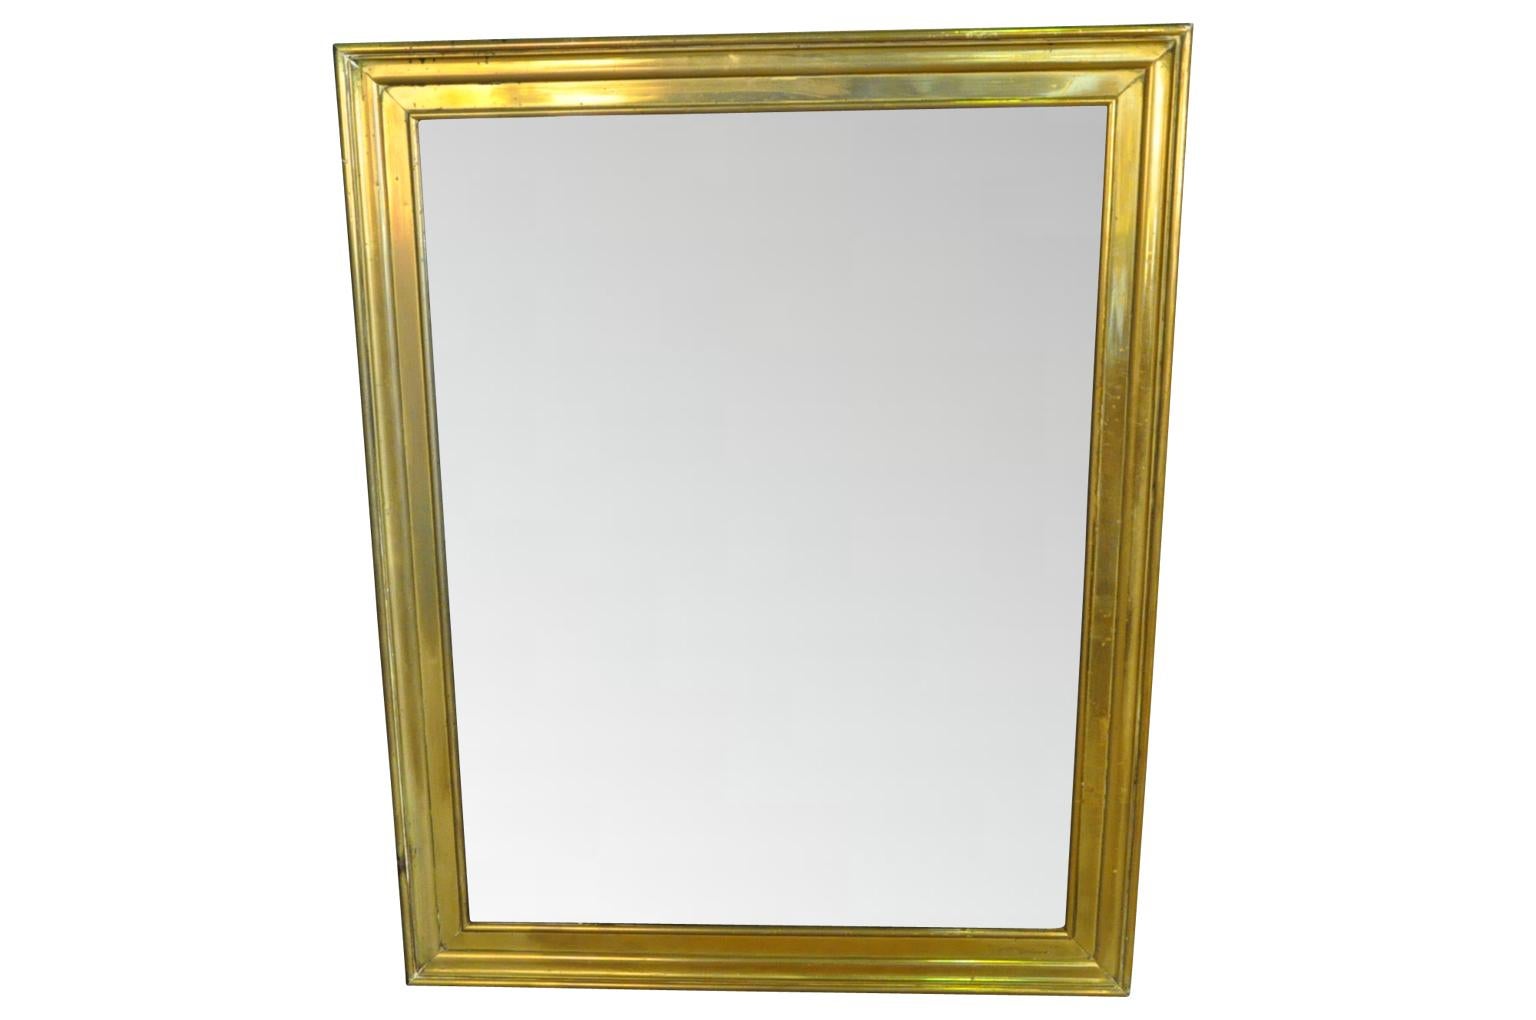 Un très beau miroir français de la fin du 19ème siècle en laiton magnifiquement moulé. Les lignes épurées de ce miroir lui confèrent un aspect très classique et contemporain. Le miroir conserve son verre au mercure d'origine et le dos est doublé de